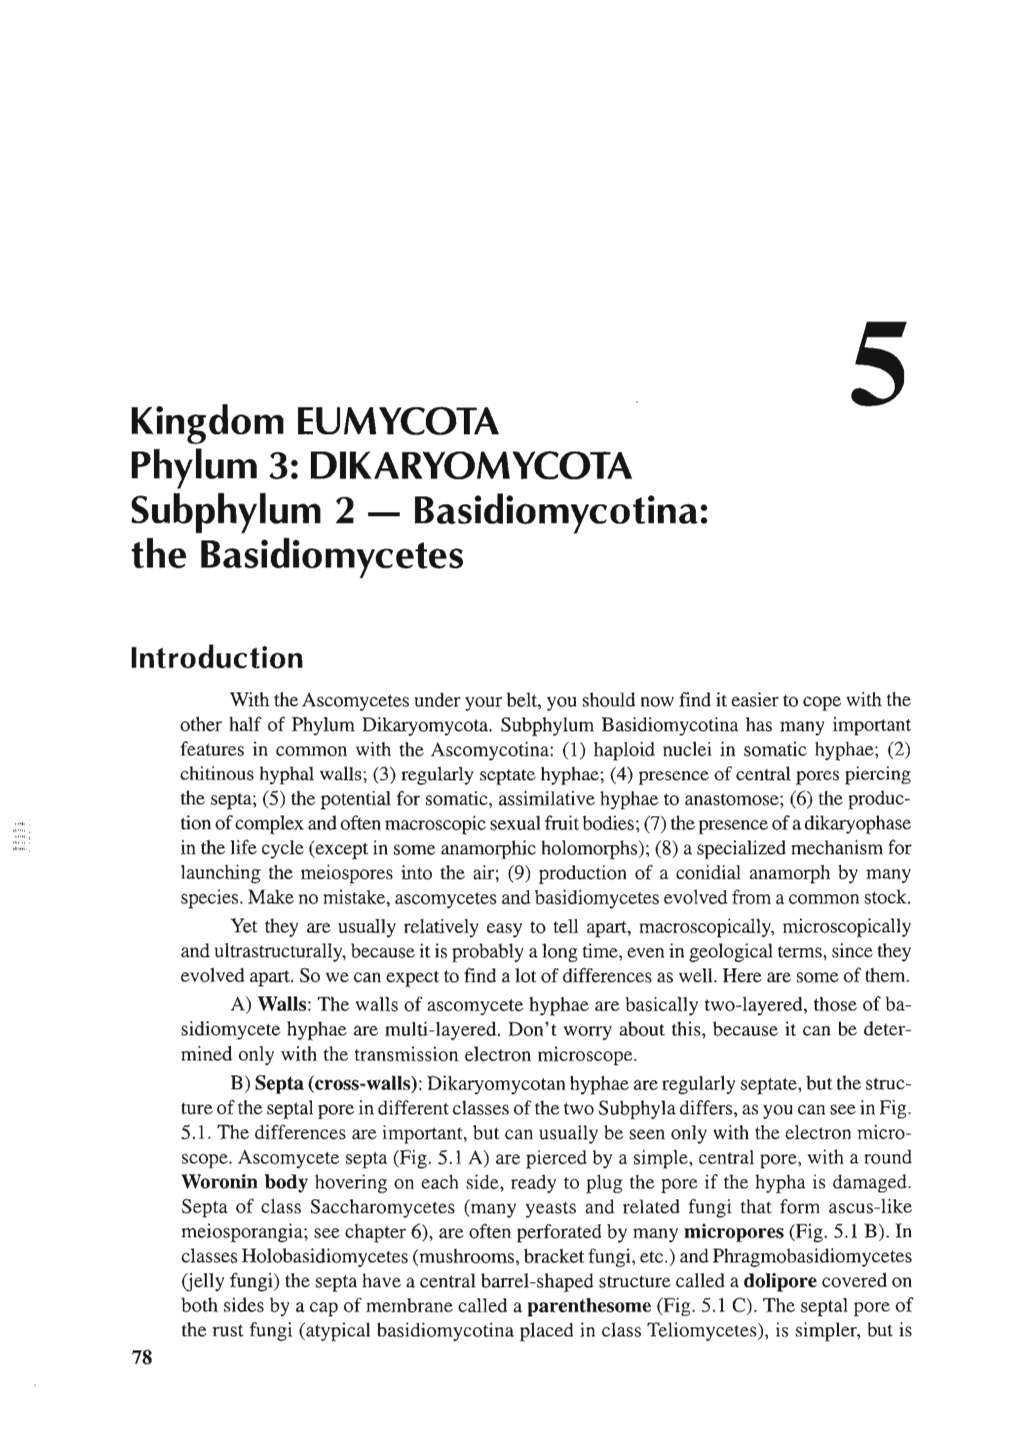 Kingdom EUMYCOTA Phylum 3: DIKARYOMYCOTA Subphylum 2 - Basidiomycotina: the Basidiomycetes